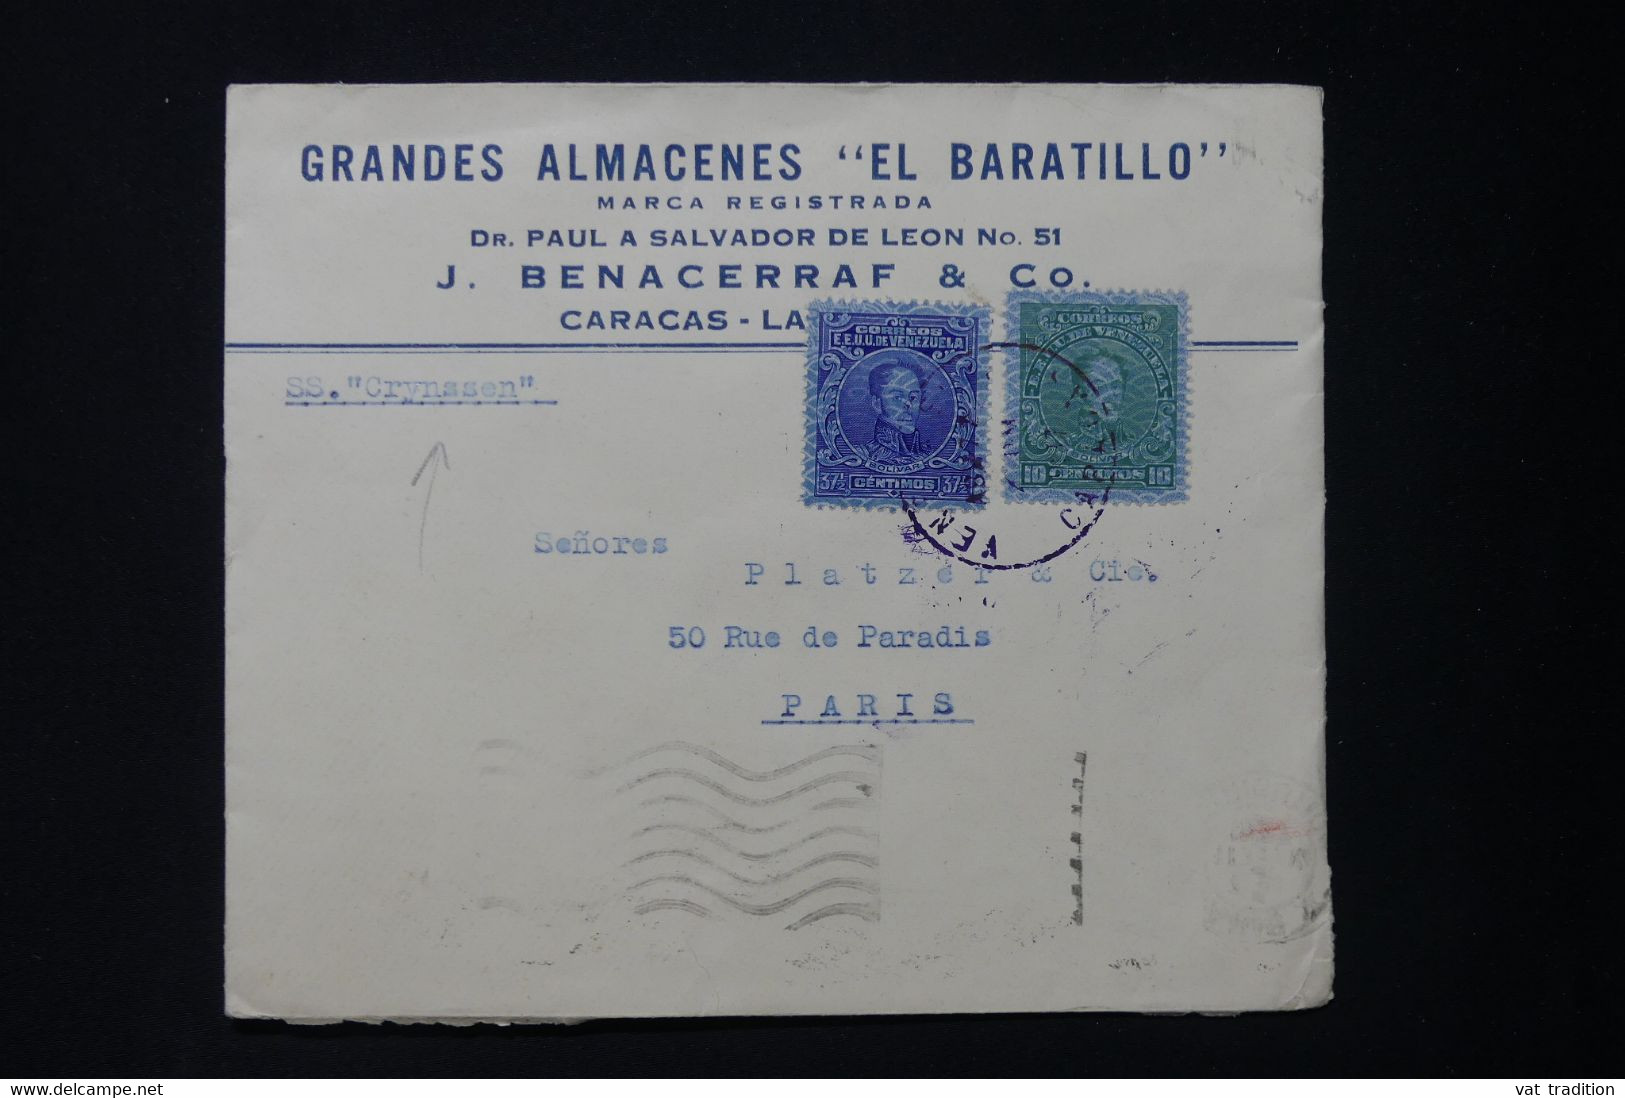 VENEZUELA - Enveloppe Commerciale De Caracas Pour La France En 1937 Par Le S/S Crynssen - L 83978 - Venezuela